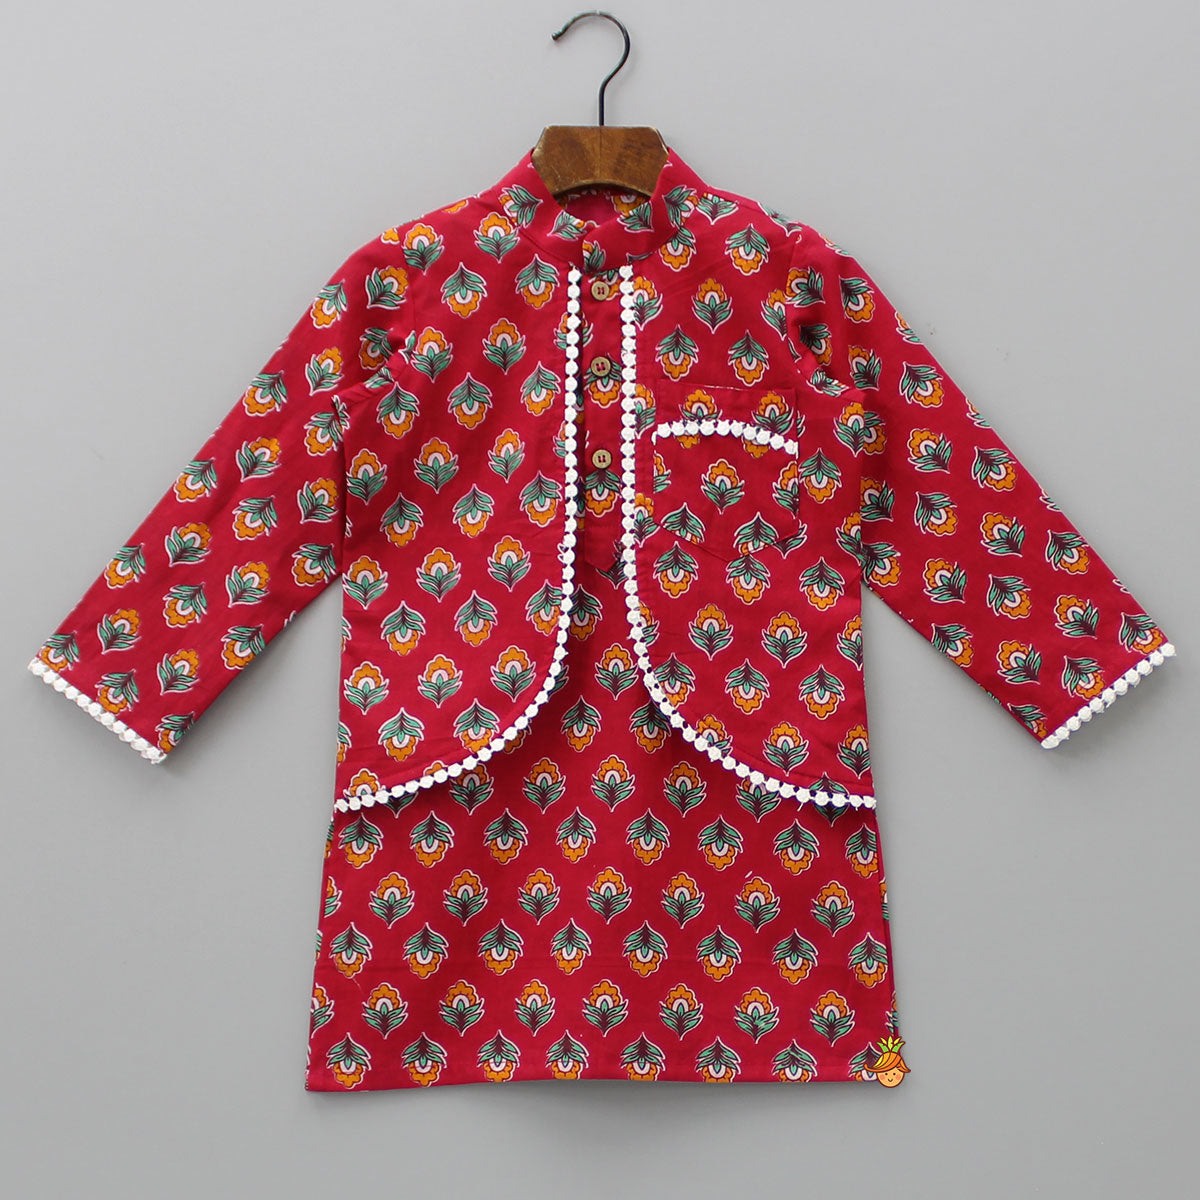 Jacket Style Red Printed Kurta And Pyjama